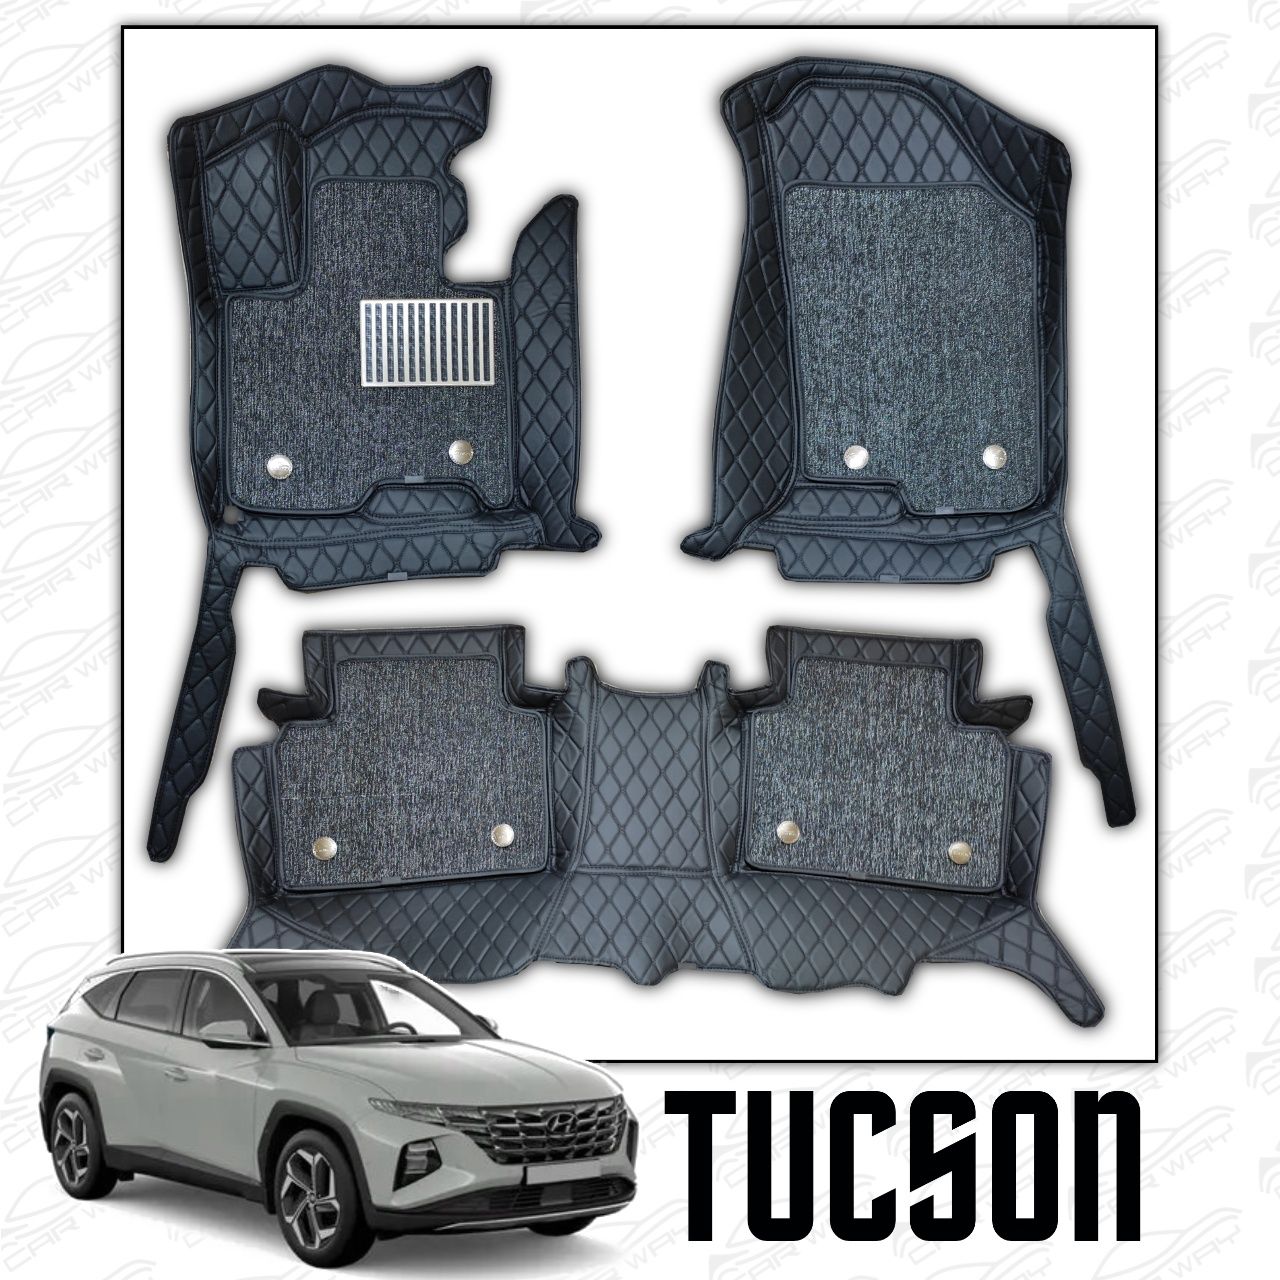 9D polik / коврики для Hyundai Tucson